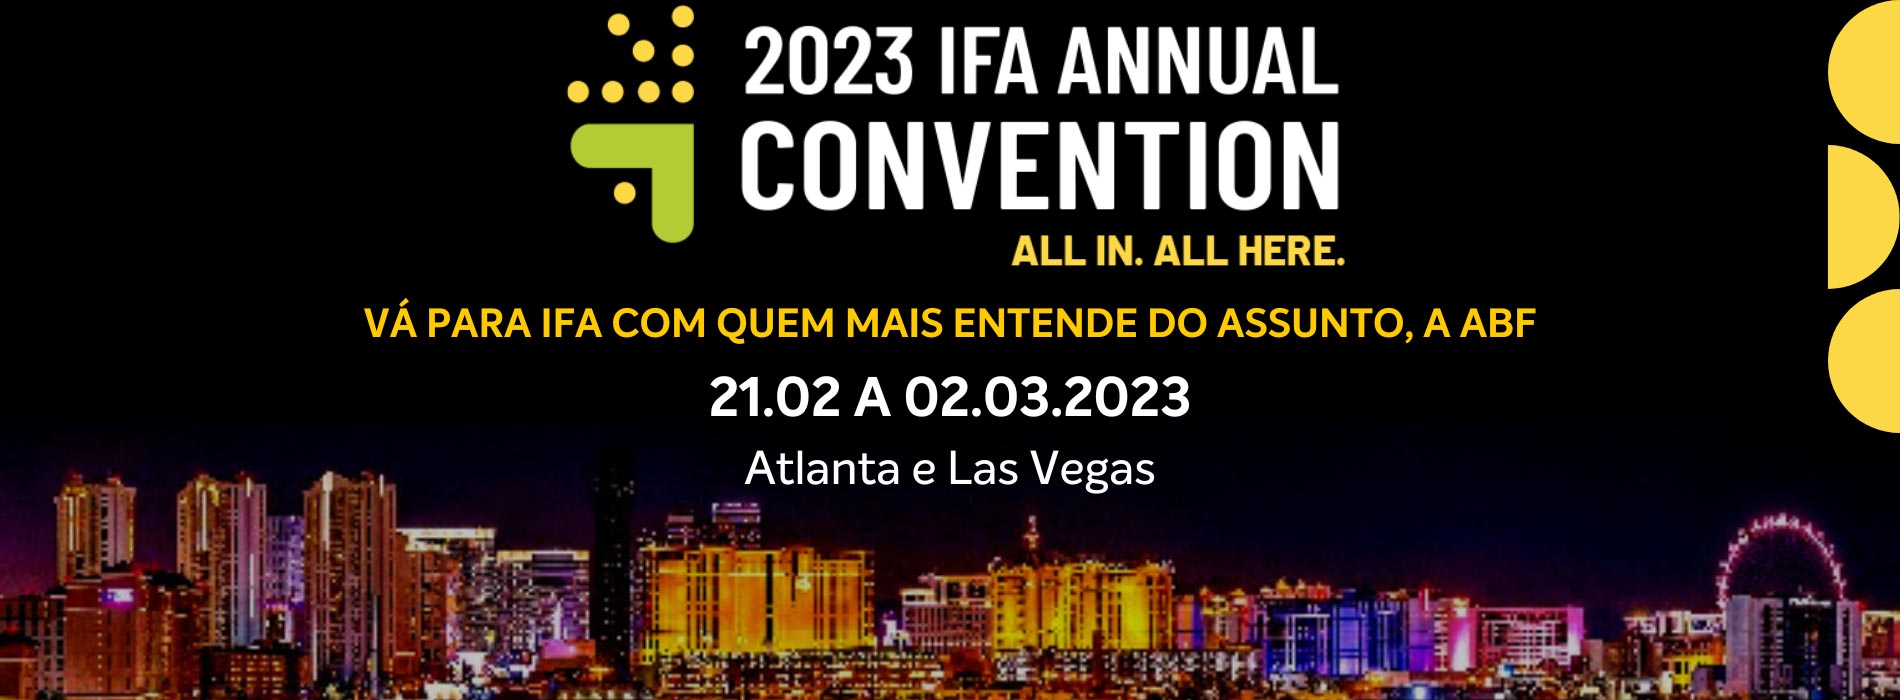 IFAIFA Convention Grupo ABF IFA 2022 ABF Grupo